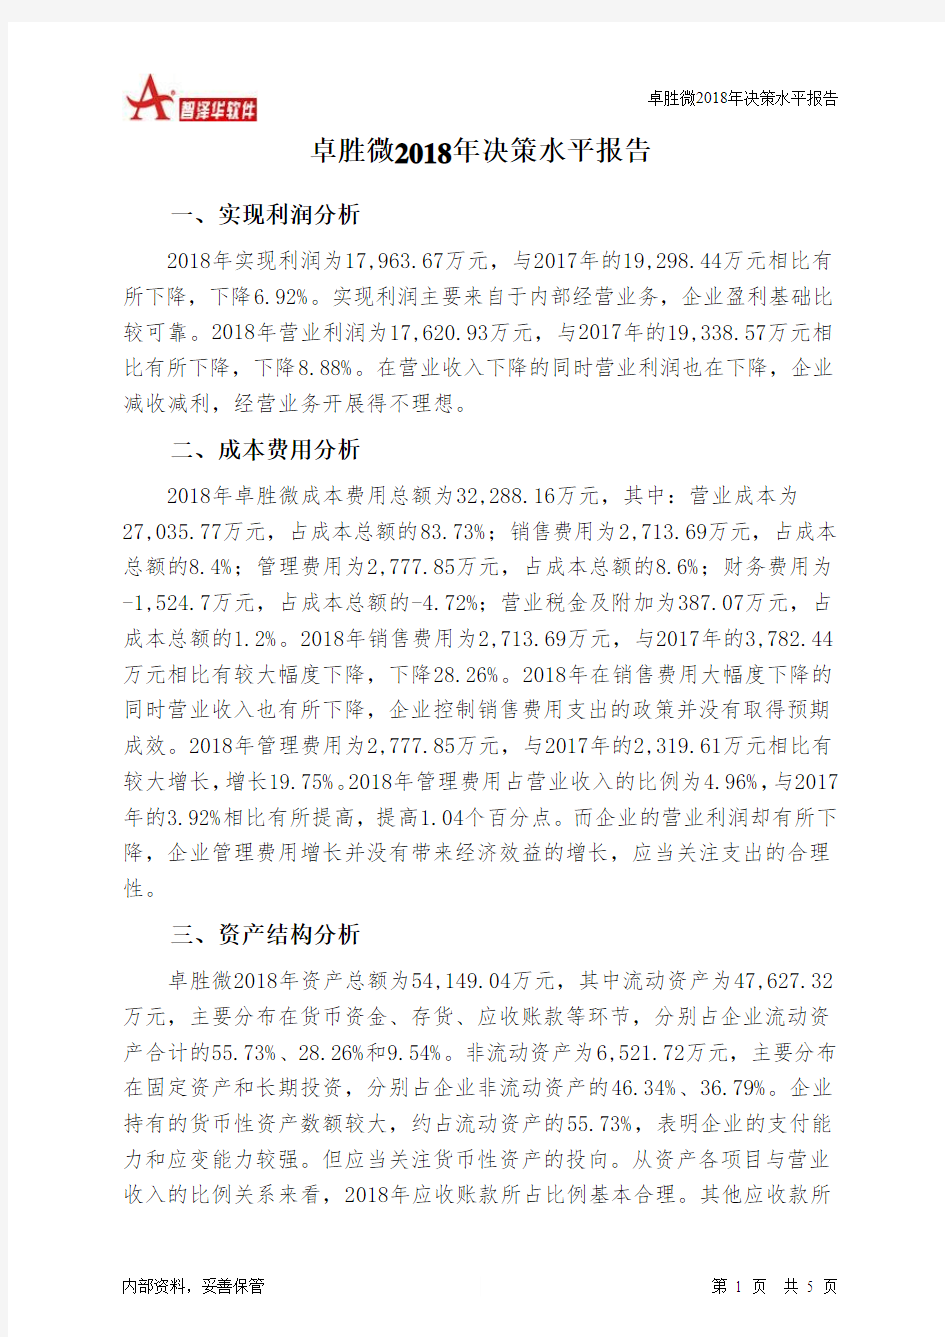 卓胜微2018年决策水平分析报告-智泽华